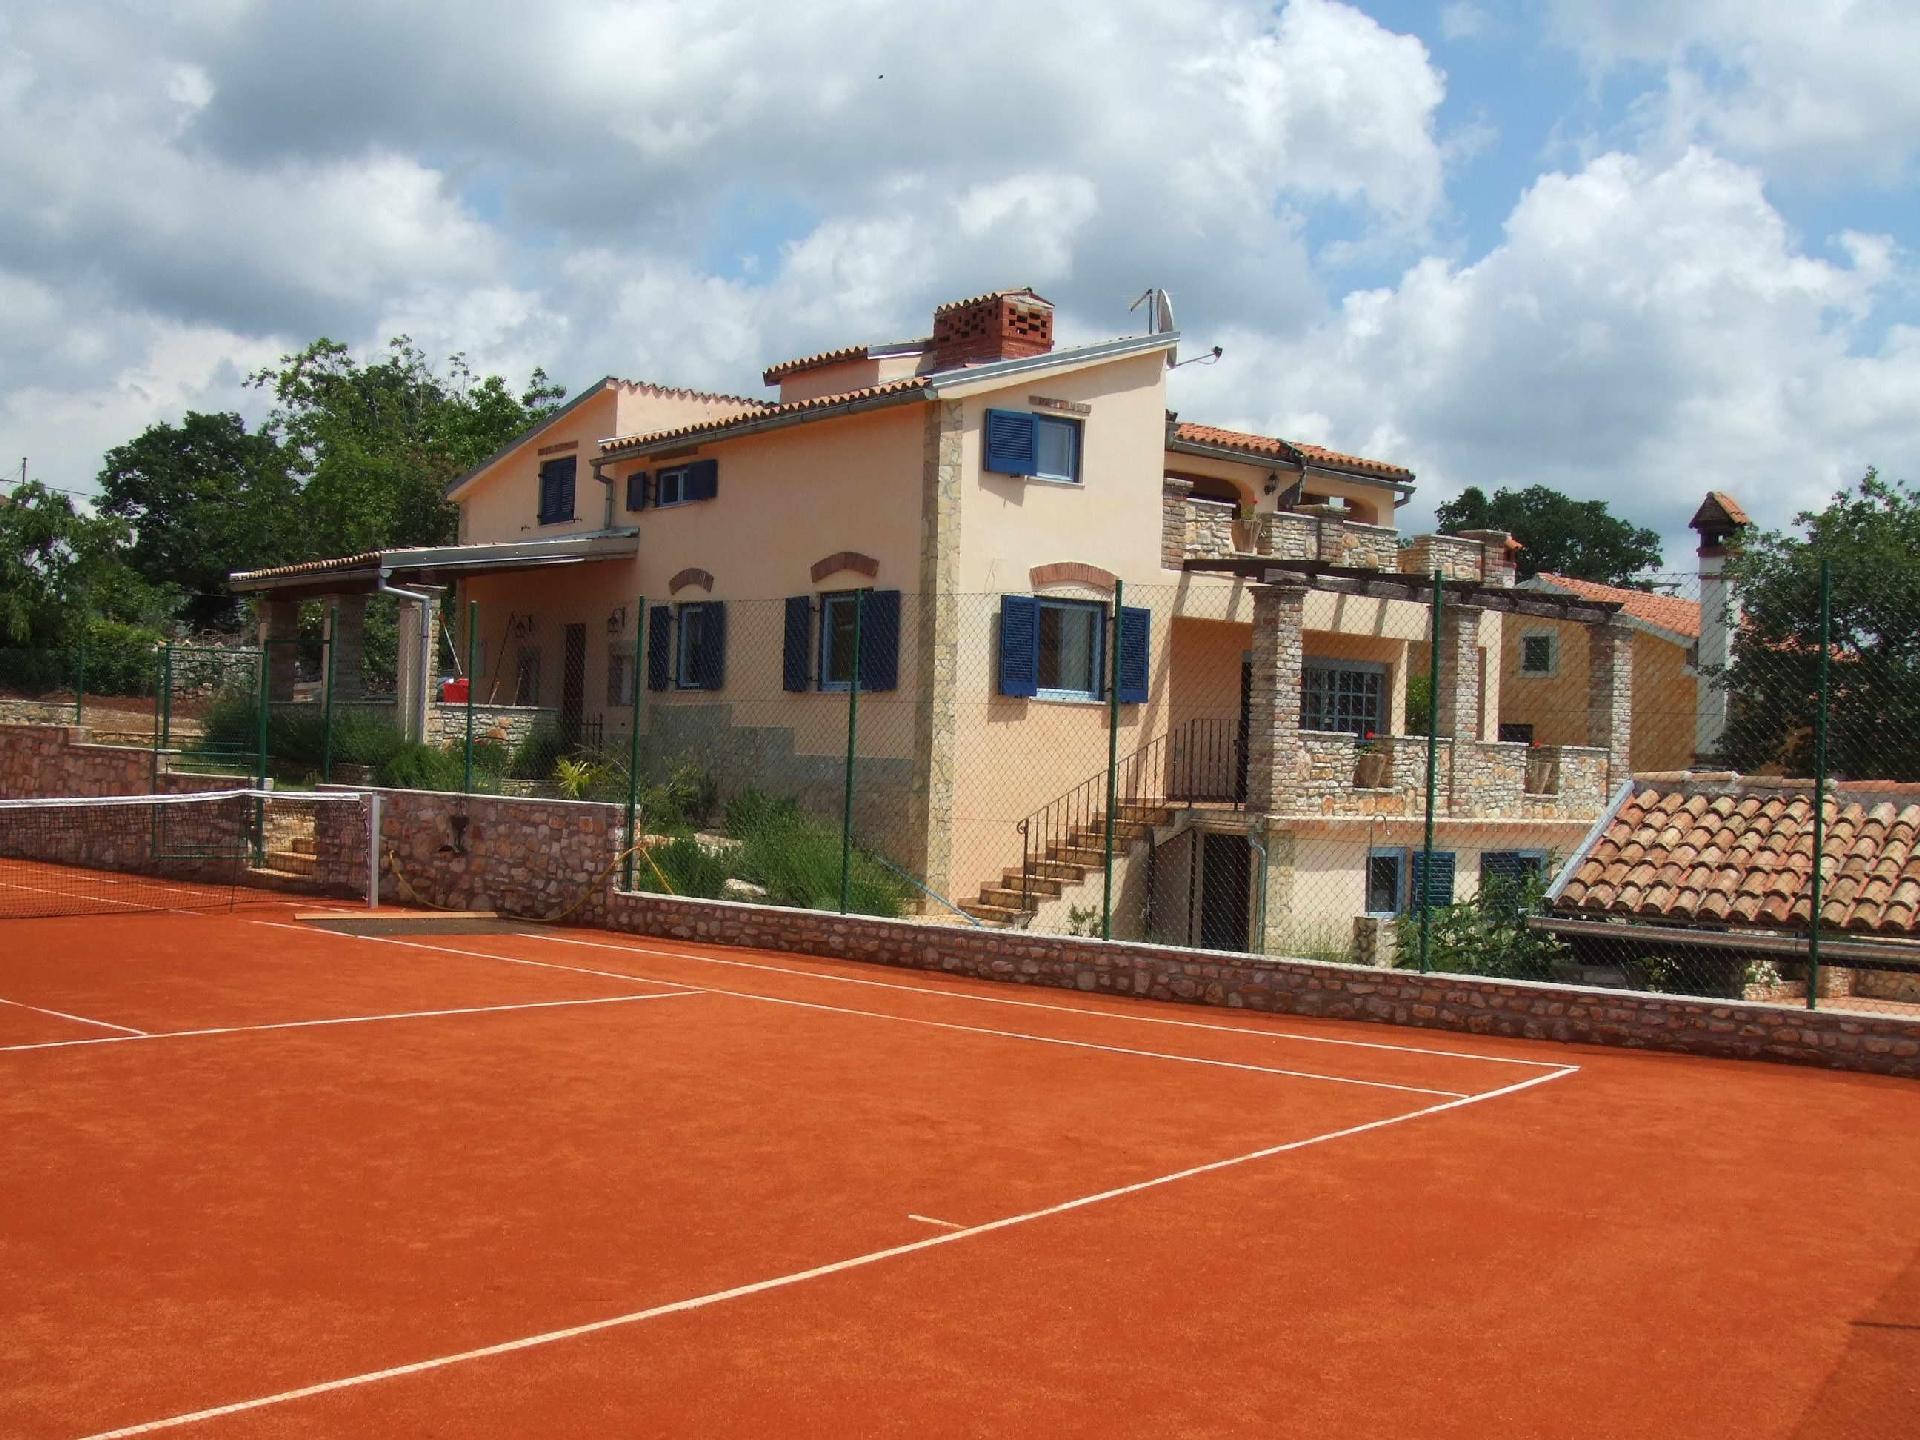  Ruhiggelegene Villa mit eigenem Tennisplatz und P Ferienhaus in Kroatien